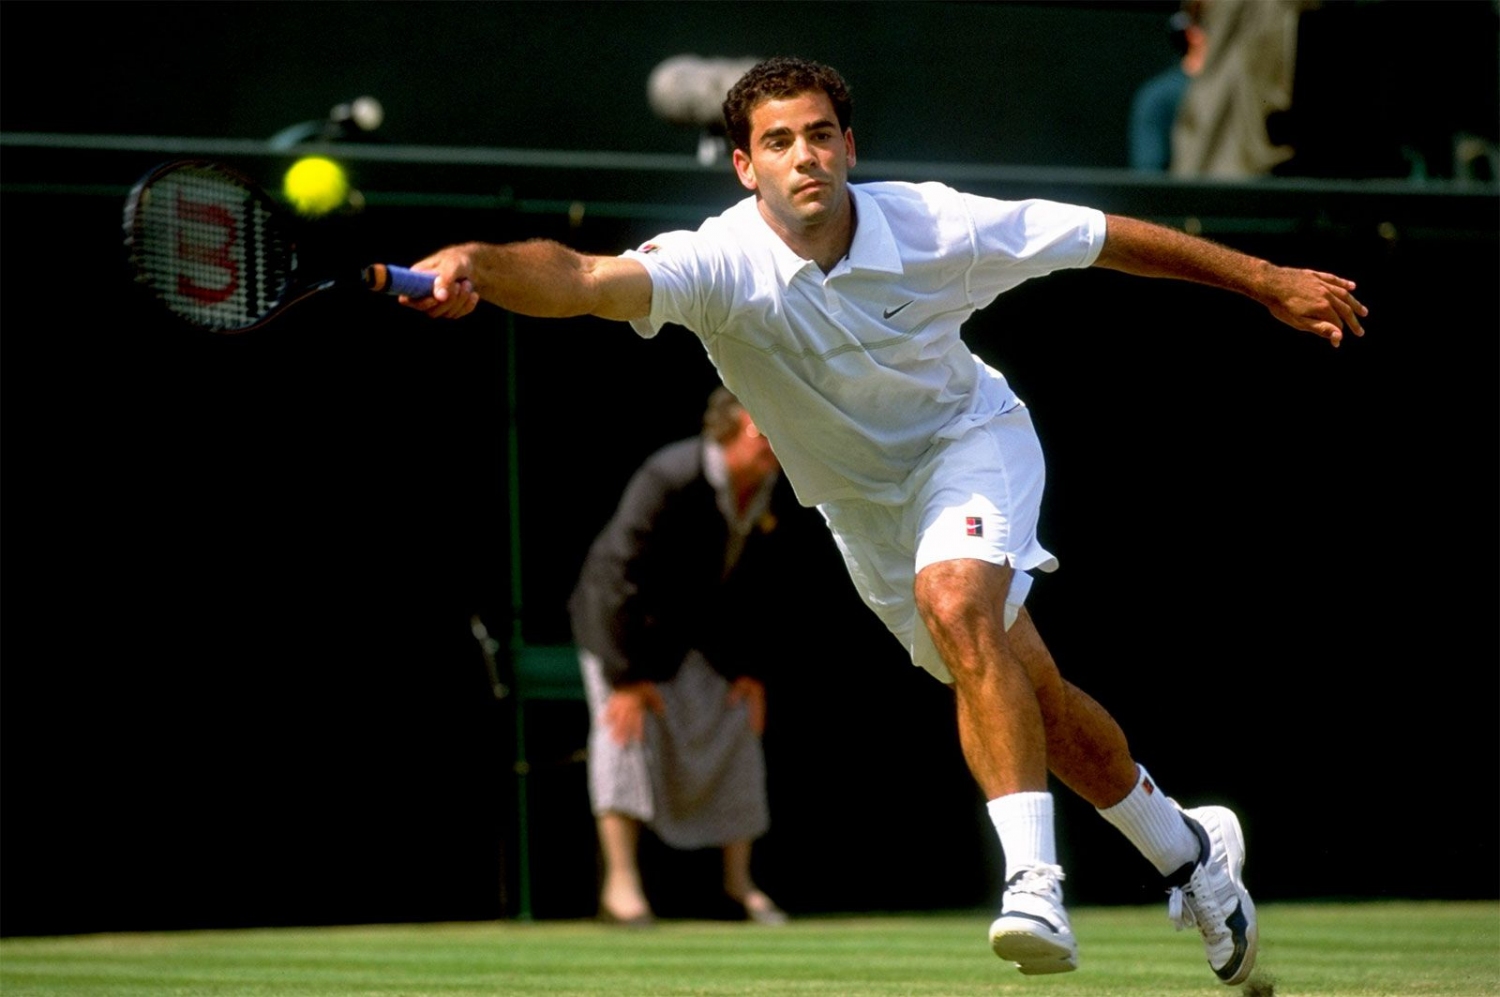 Pete Sampras men singles championship Wimbledon sets 1998